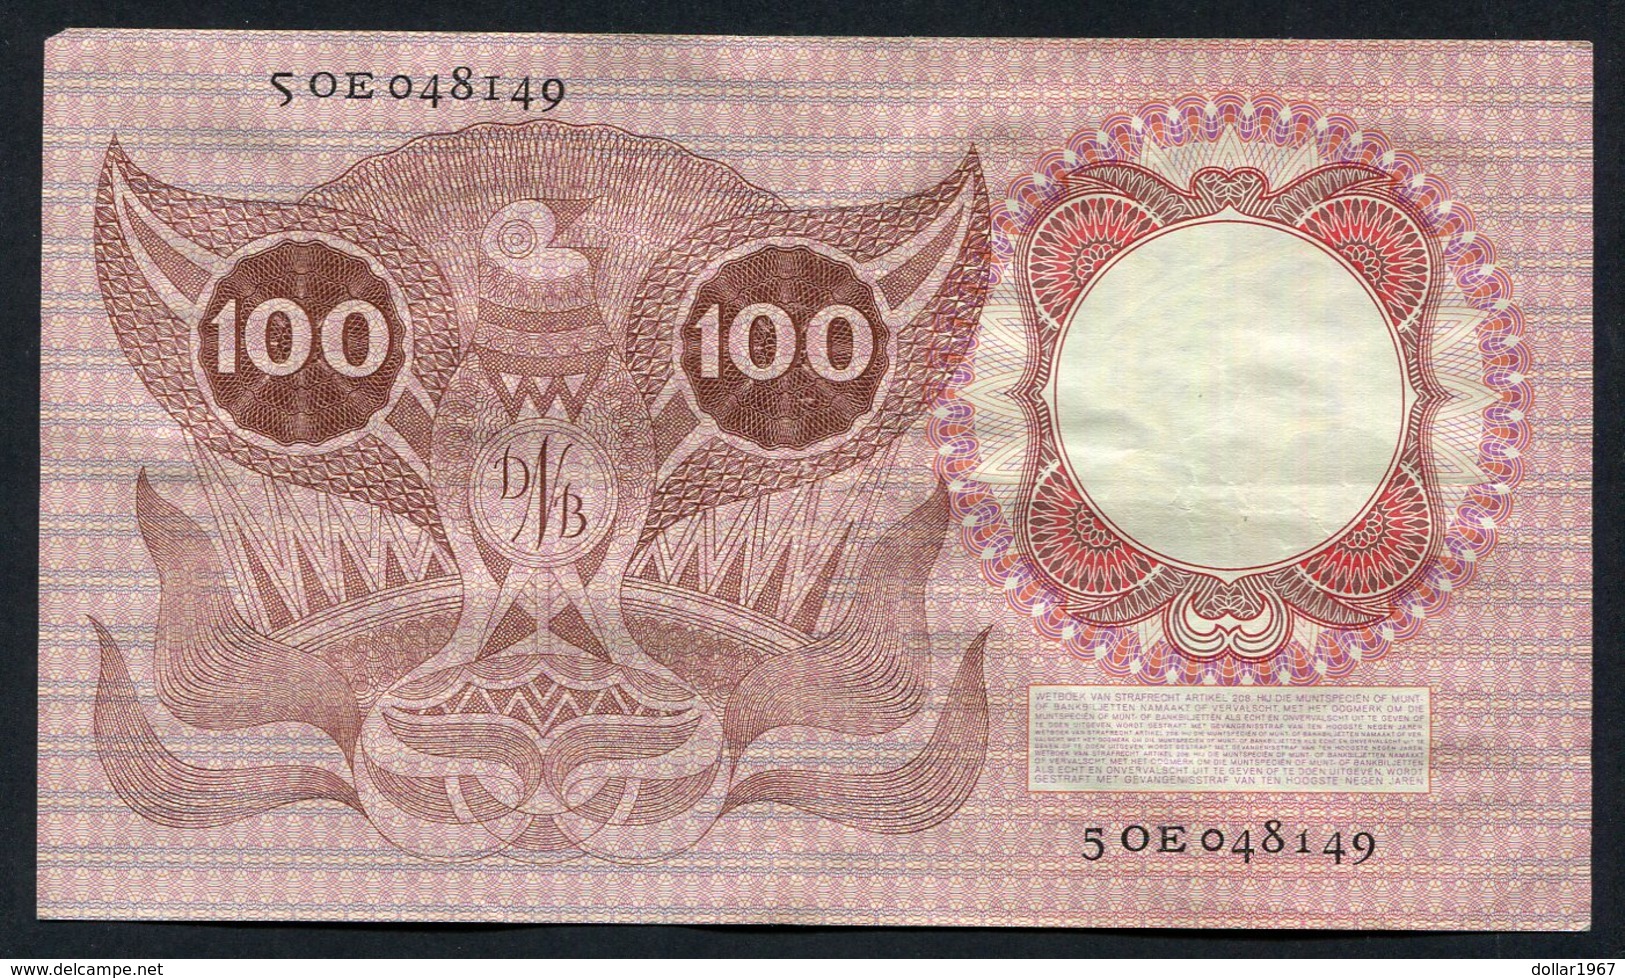 :Netherlands  -  100 Gulden 1953 'Erasmus' 2-2-1953 - 100 Gulden